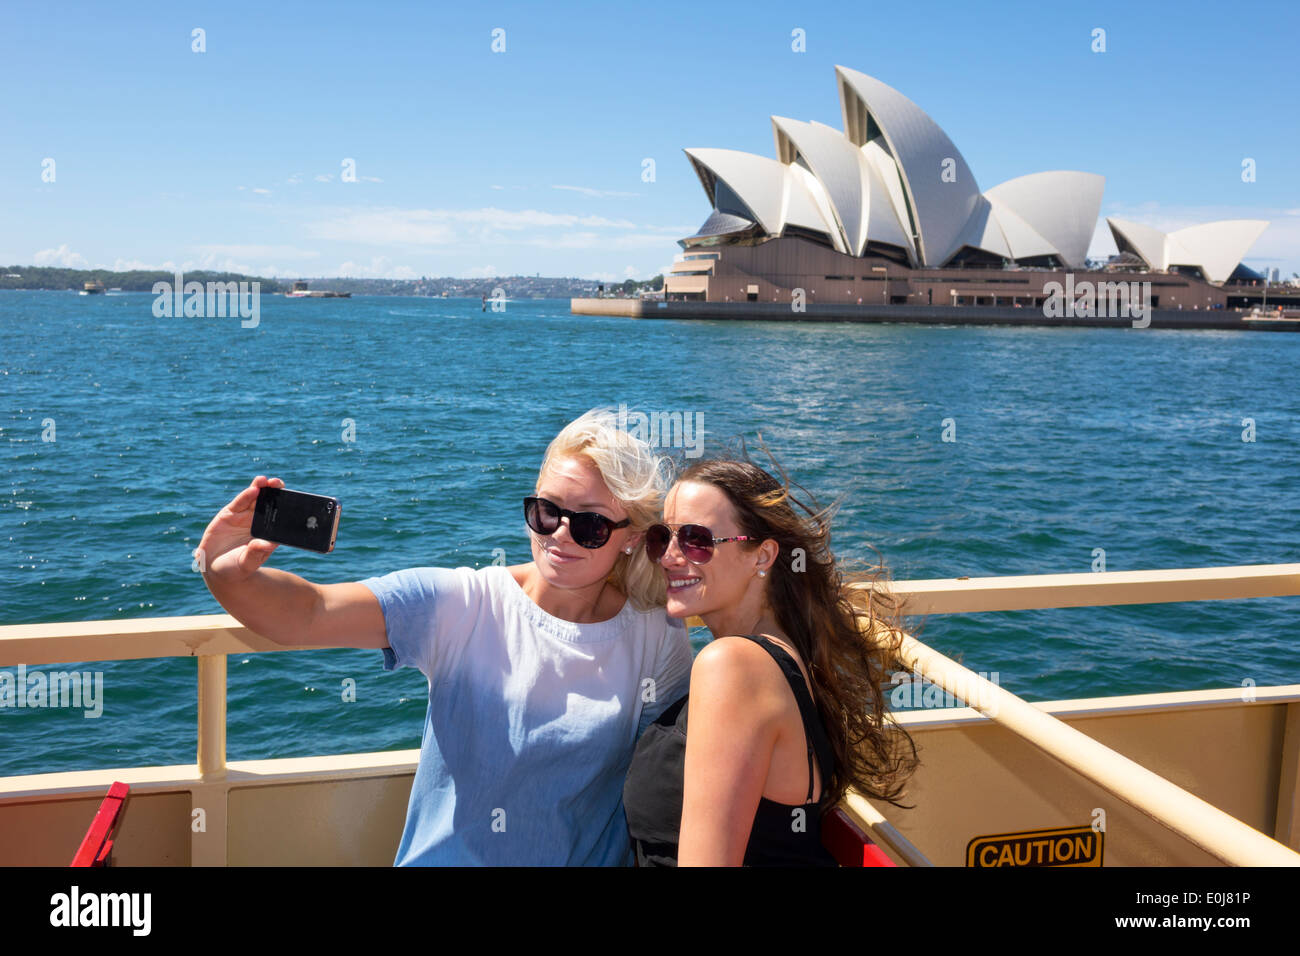 Sydney Australie,Sydney Ferries,Harbour,Harbour,Opera House,ferry,pont supérieur,riders,passagers motards,femme femme femme,amis,poser Banque D'Images